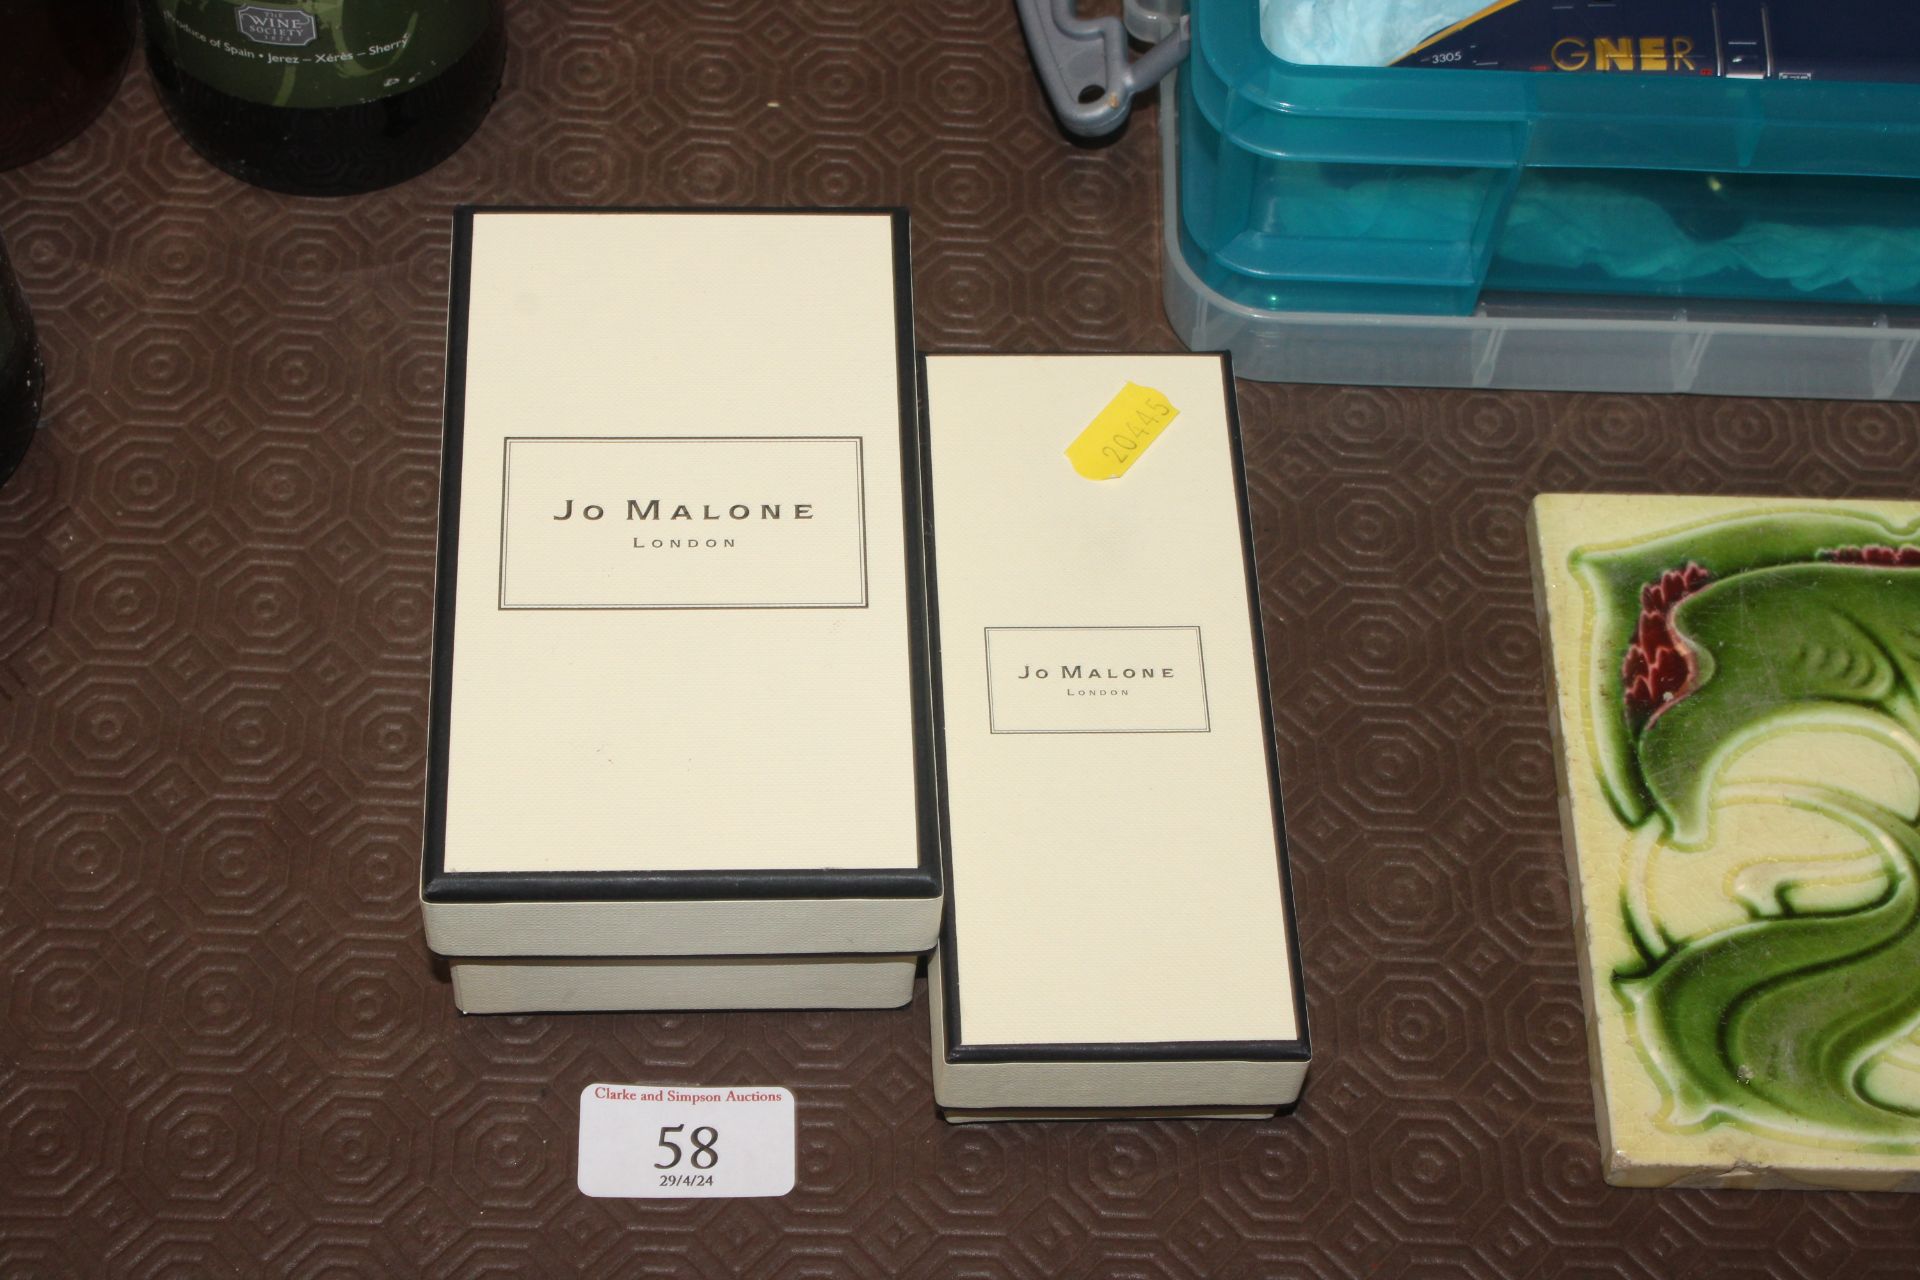 Two Jo Malone London perfume boxes